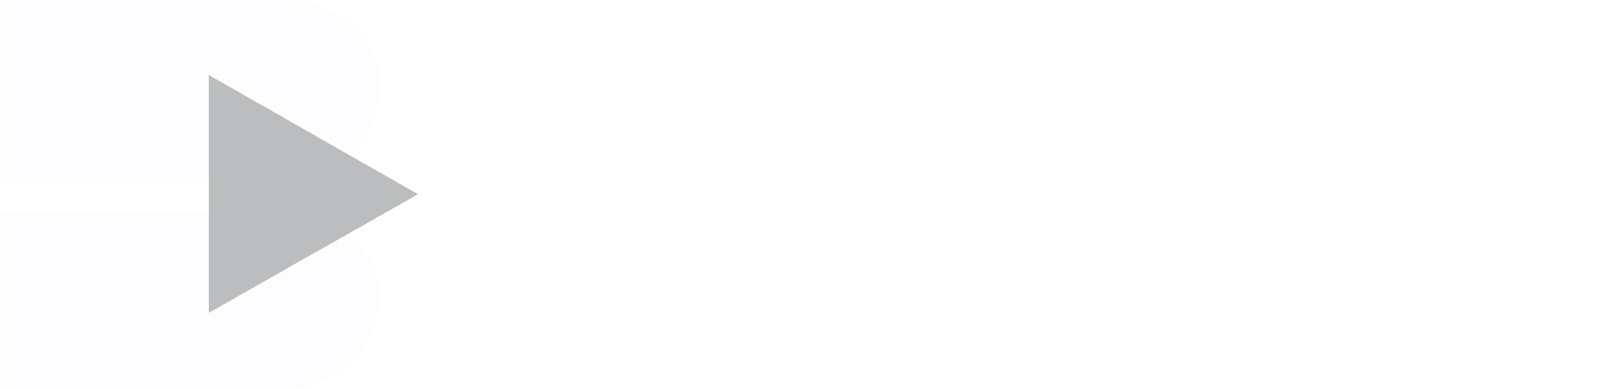 The Bidvest Group logo large for dark backgrounds (transparent PNG)